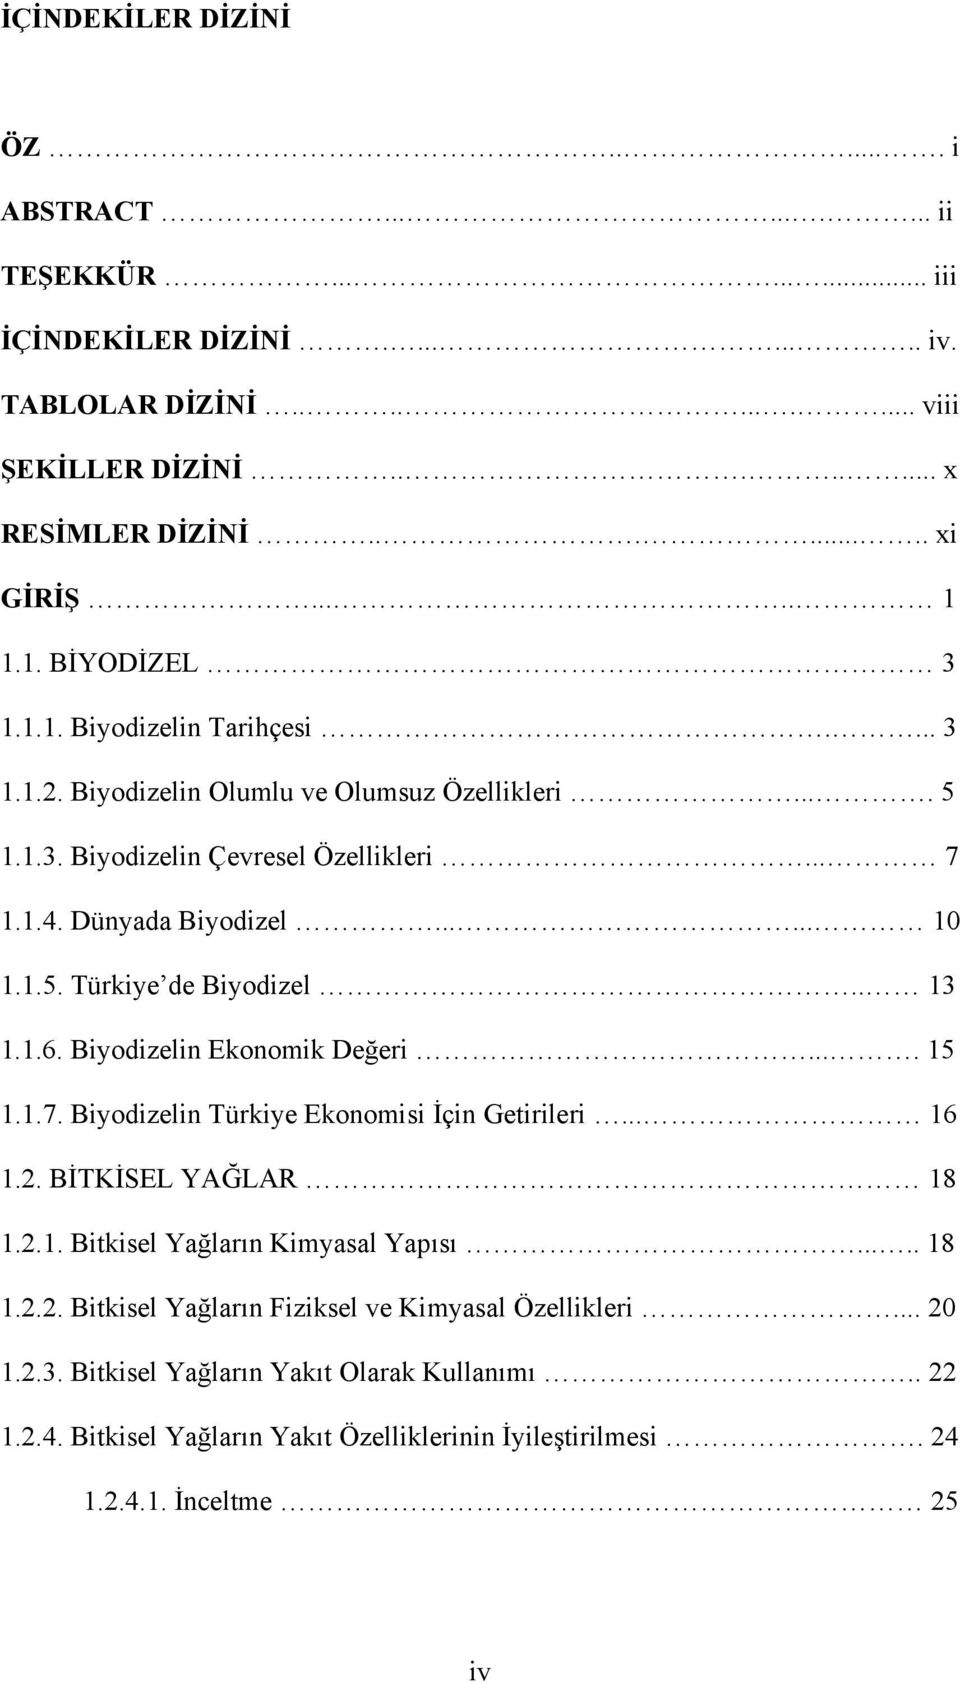 . 13 1.1.6. Biyodizelin Ekonomik Değeri.... 15 1.1.7. Biyodizelin Türkiye Ekonomisi İçin Getirileri... 16 1.2. BİTKİSEL YAĞLAR 18 1.2.1. Bitkisel Yağların Kimyasal Yapısı..... 18 1.2.2. Bitkisel Yağların Fiziksel ve Kimyasal Özellikleri.